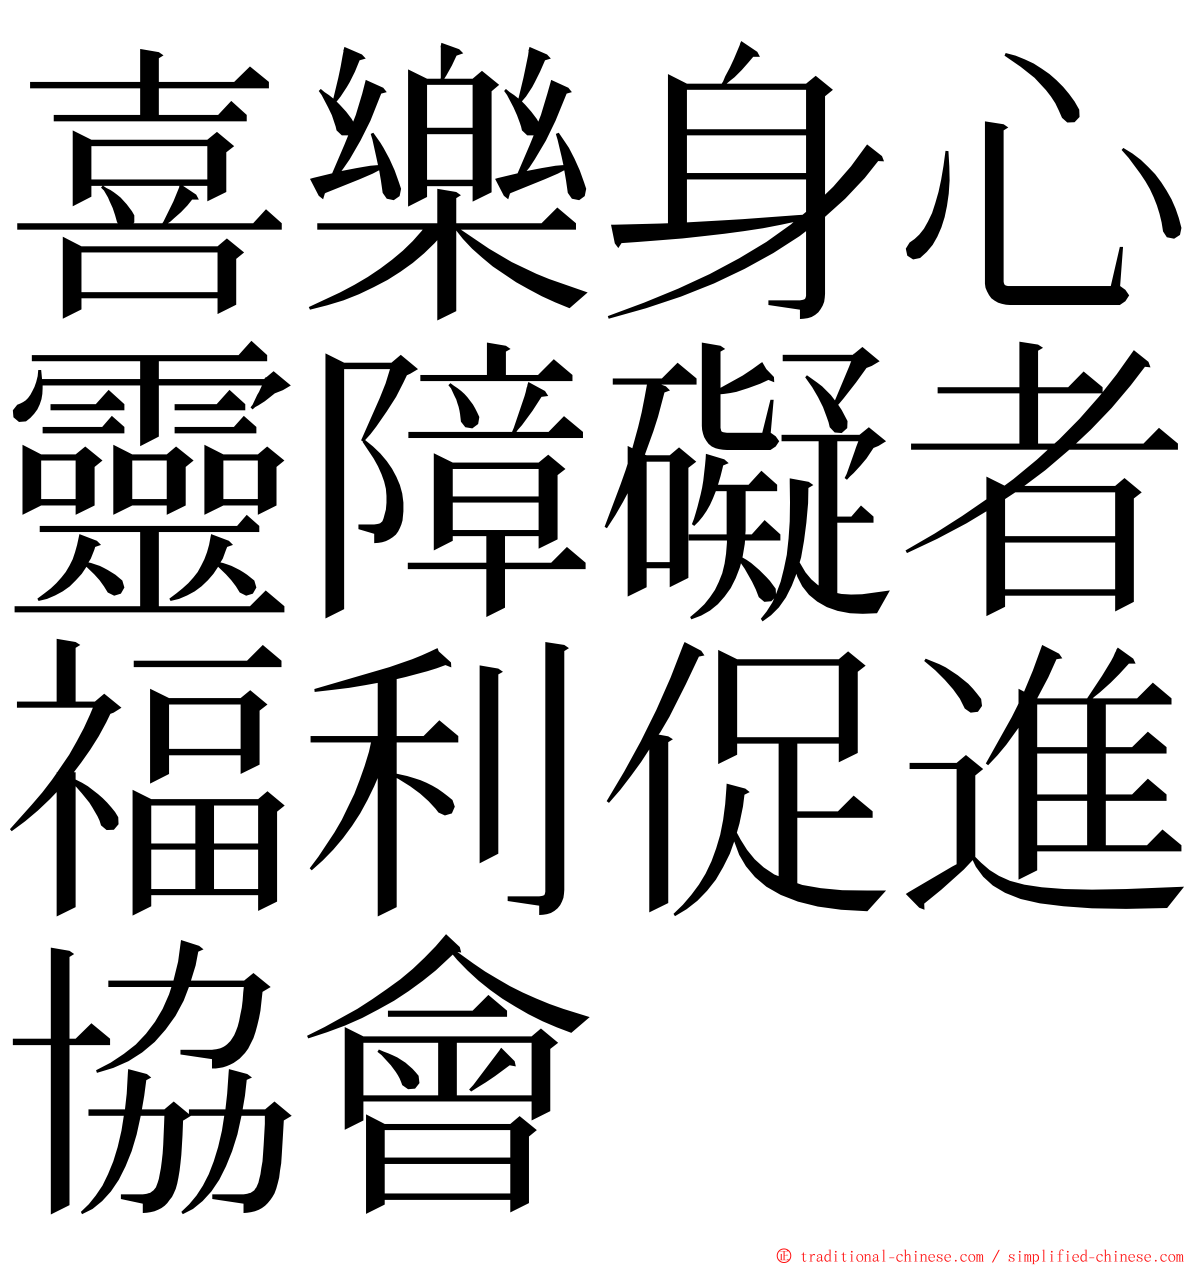 喜樂身心靈障礙者福利促進協會 ming font